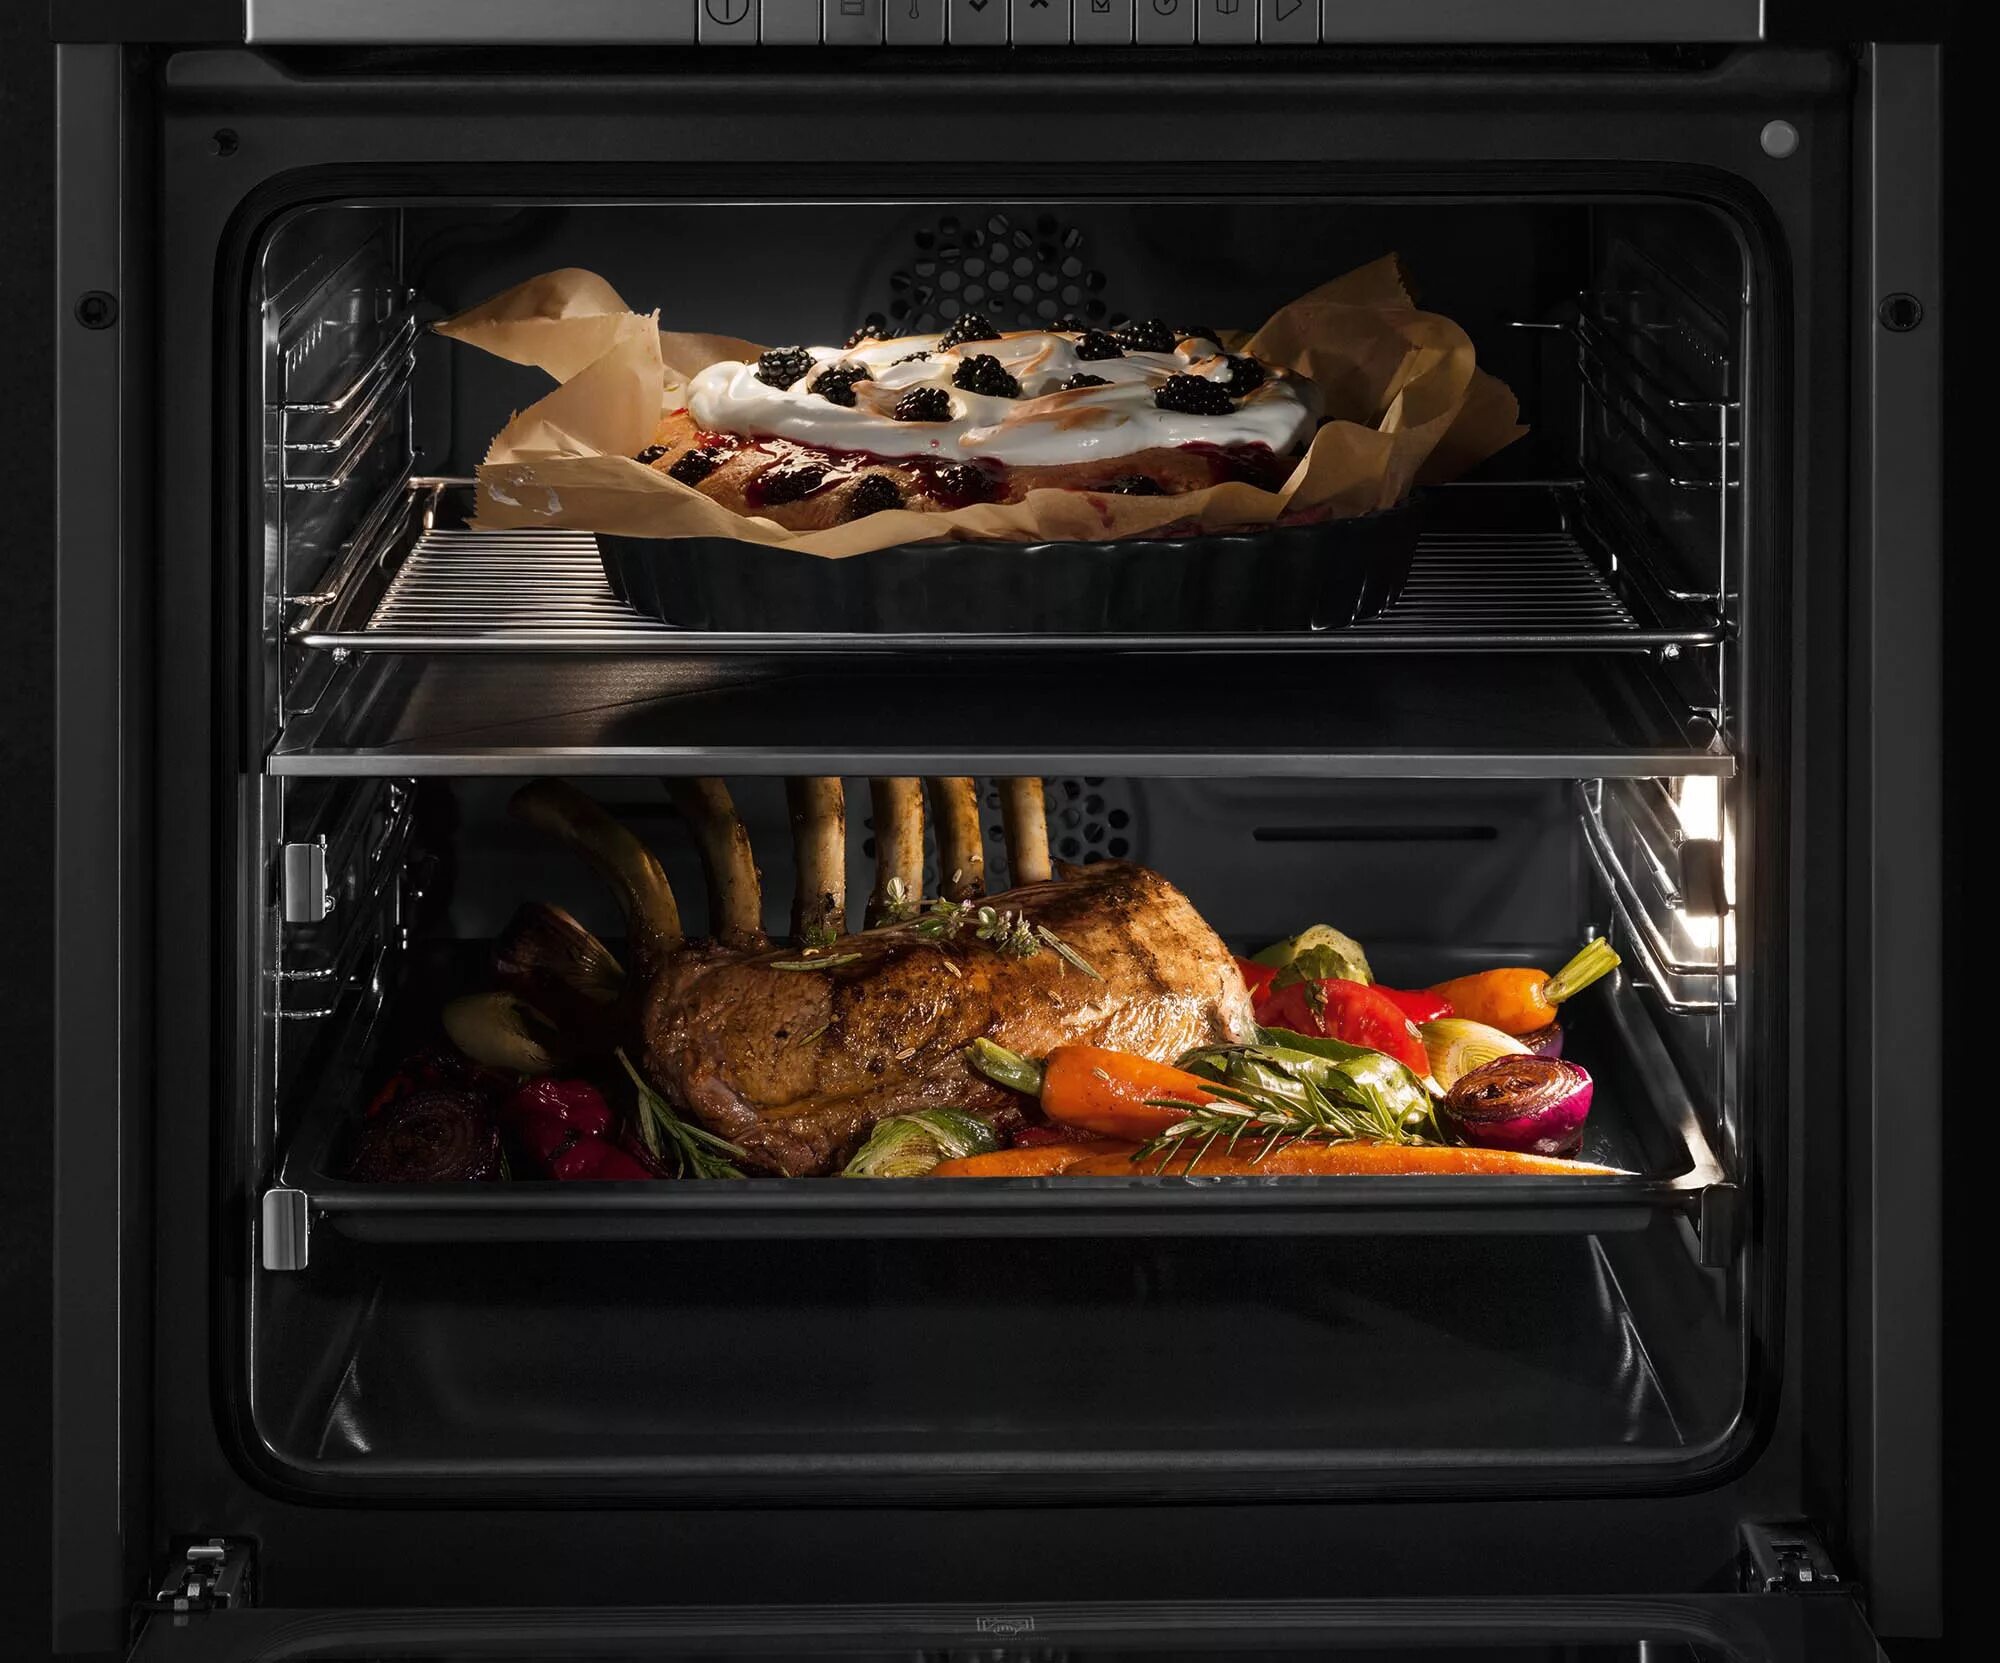 Духовочный шкаф Lexury 2-layer 4 -Tray Electric Oven. Grundig духовой шкаф. Электрический духовой шкаф le Chef bo 6510 BX. Электрический духовой шкаф le Chef bo 6504 b.